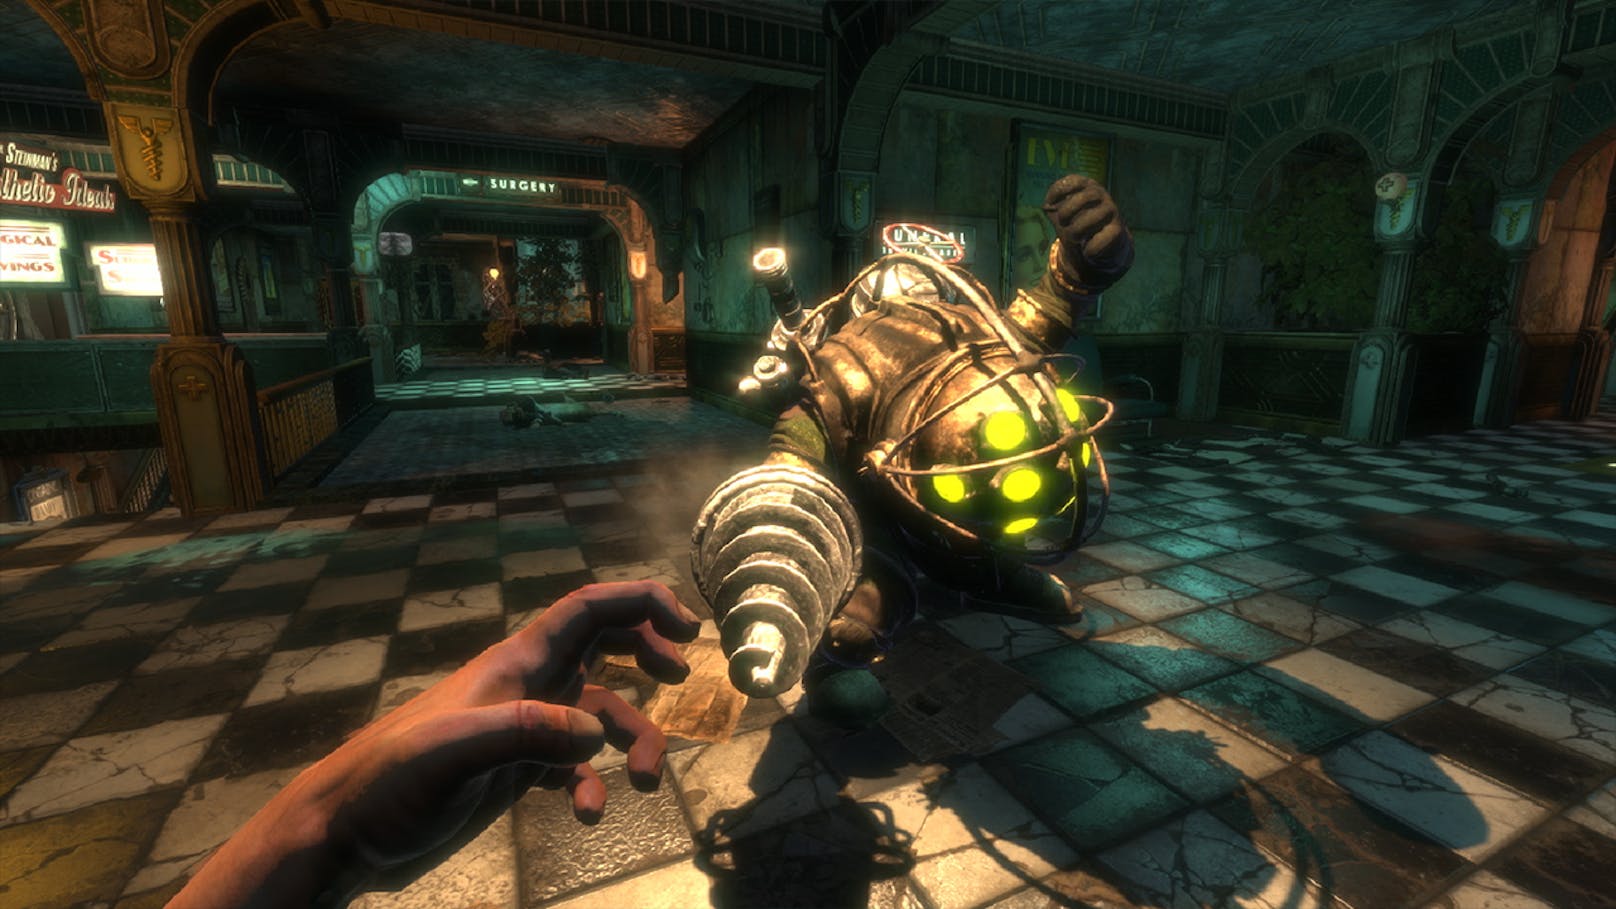 Was bietet "BioShock: The Collection" auf Switch eigentlich? Es handelt sich um die Games "BioShock Remastered", "BioShock 2 Remastered" und "BioShock Infinite: The Complete Edition" einschließlich sämtlicher Singleplayer-Add-ons.